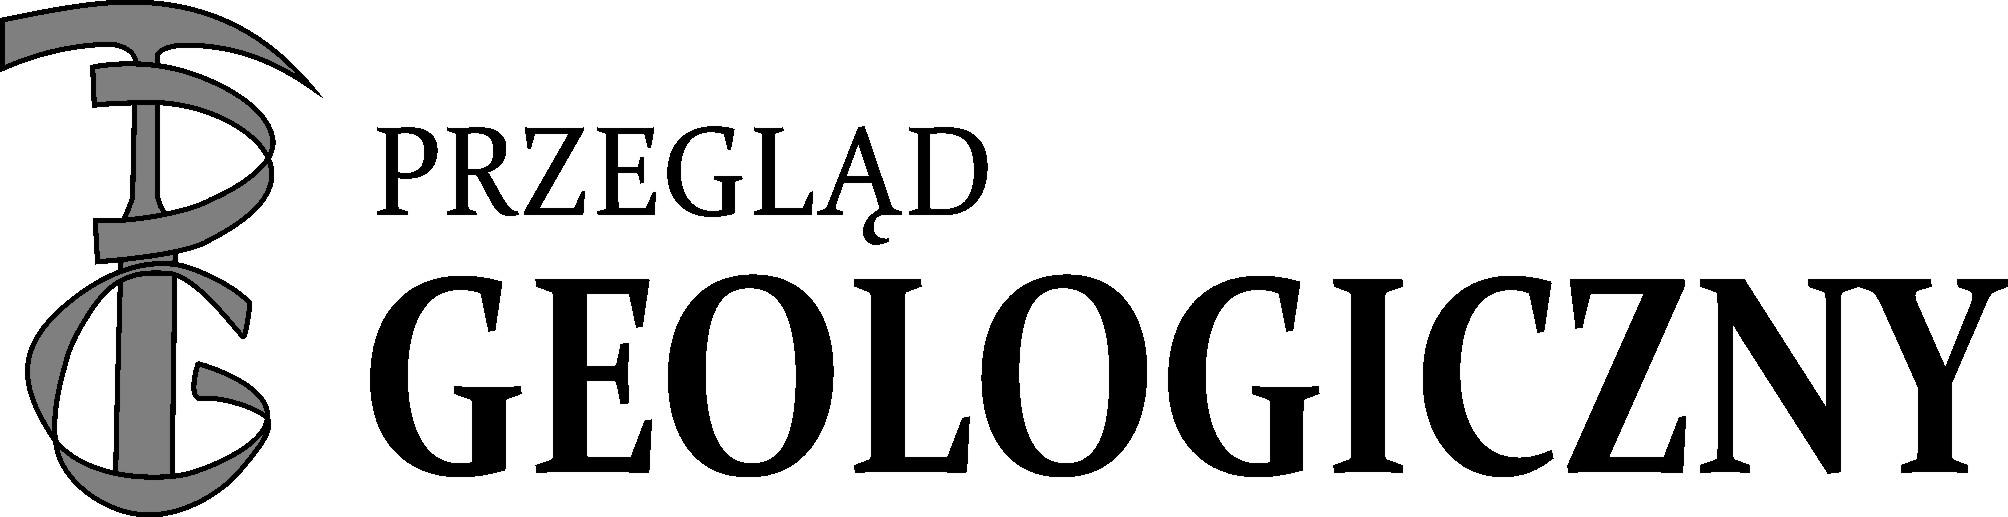 logo przeglad geologiczny